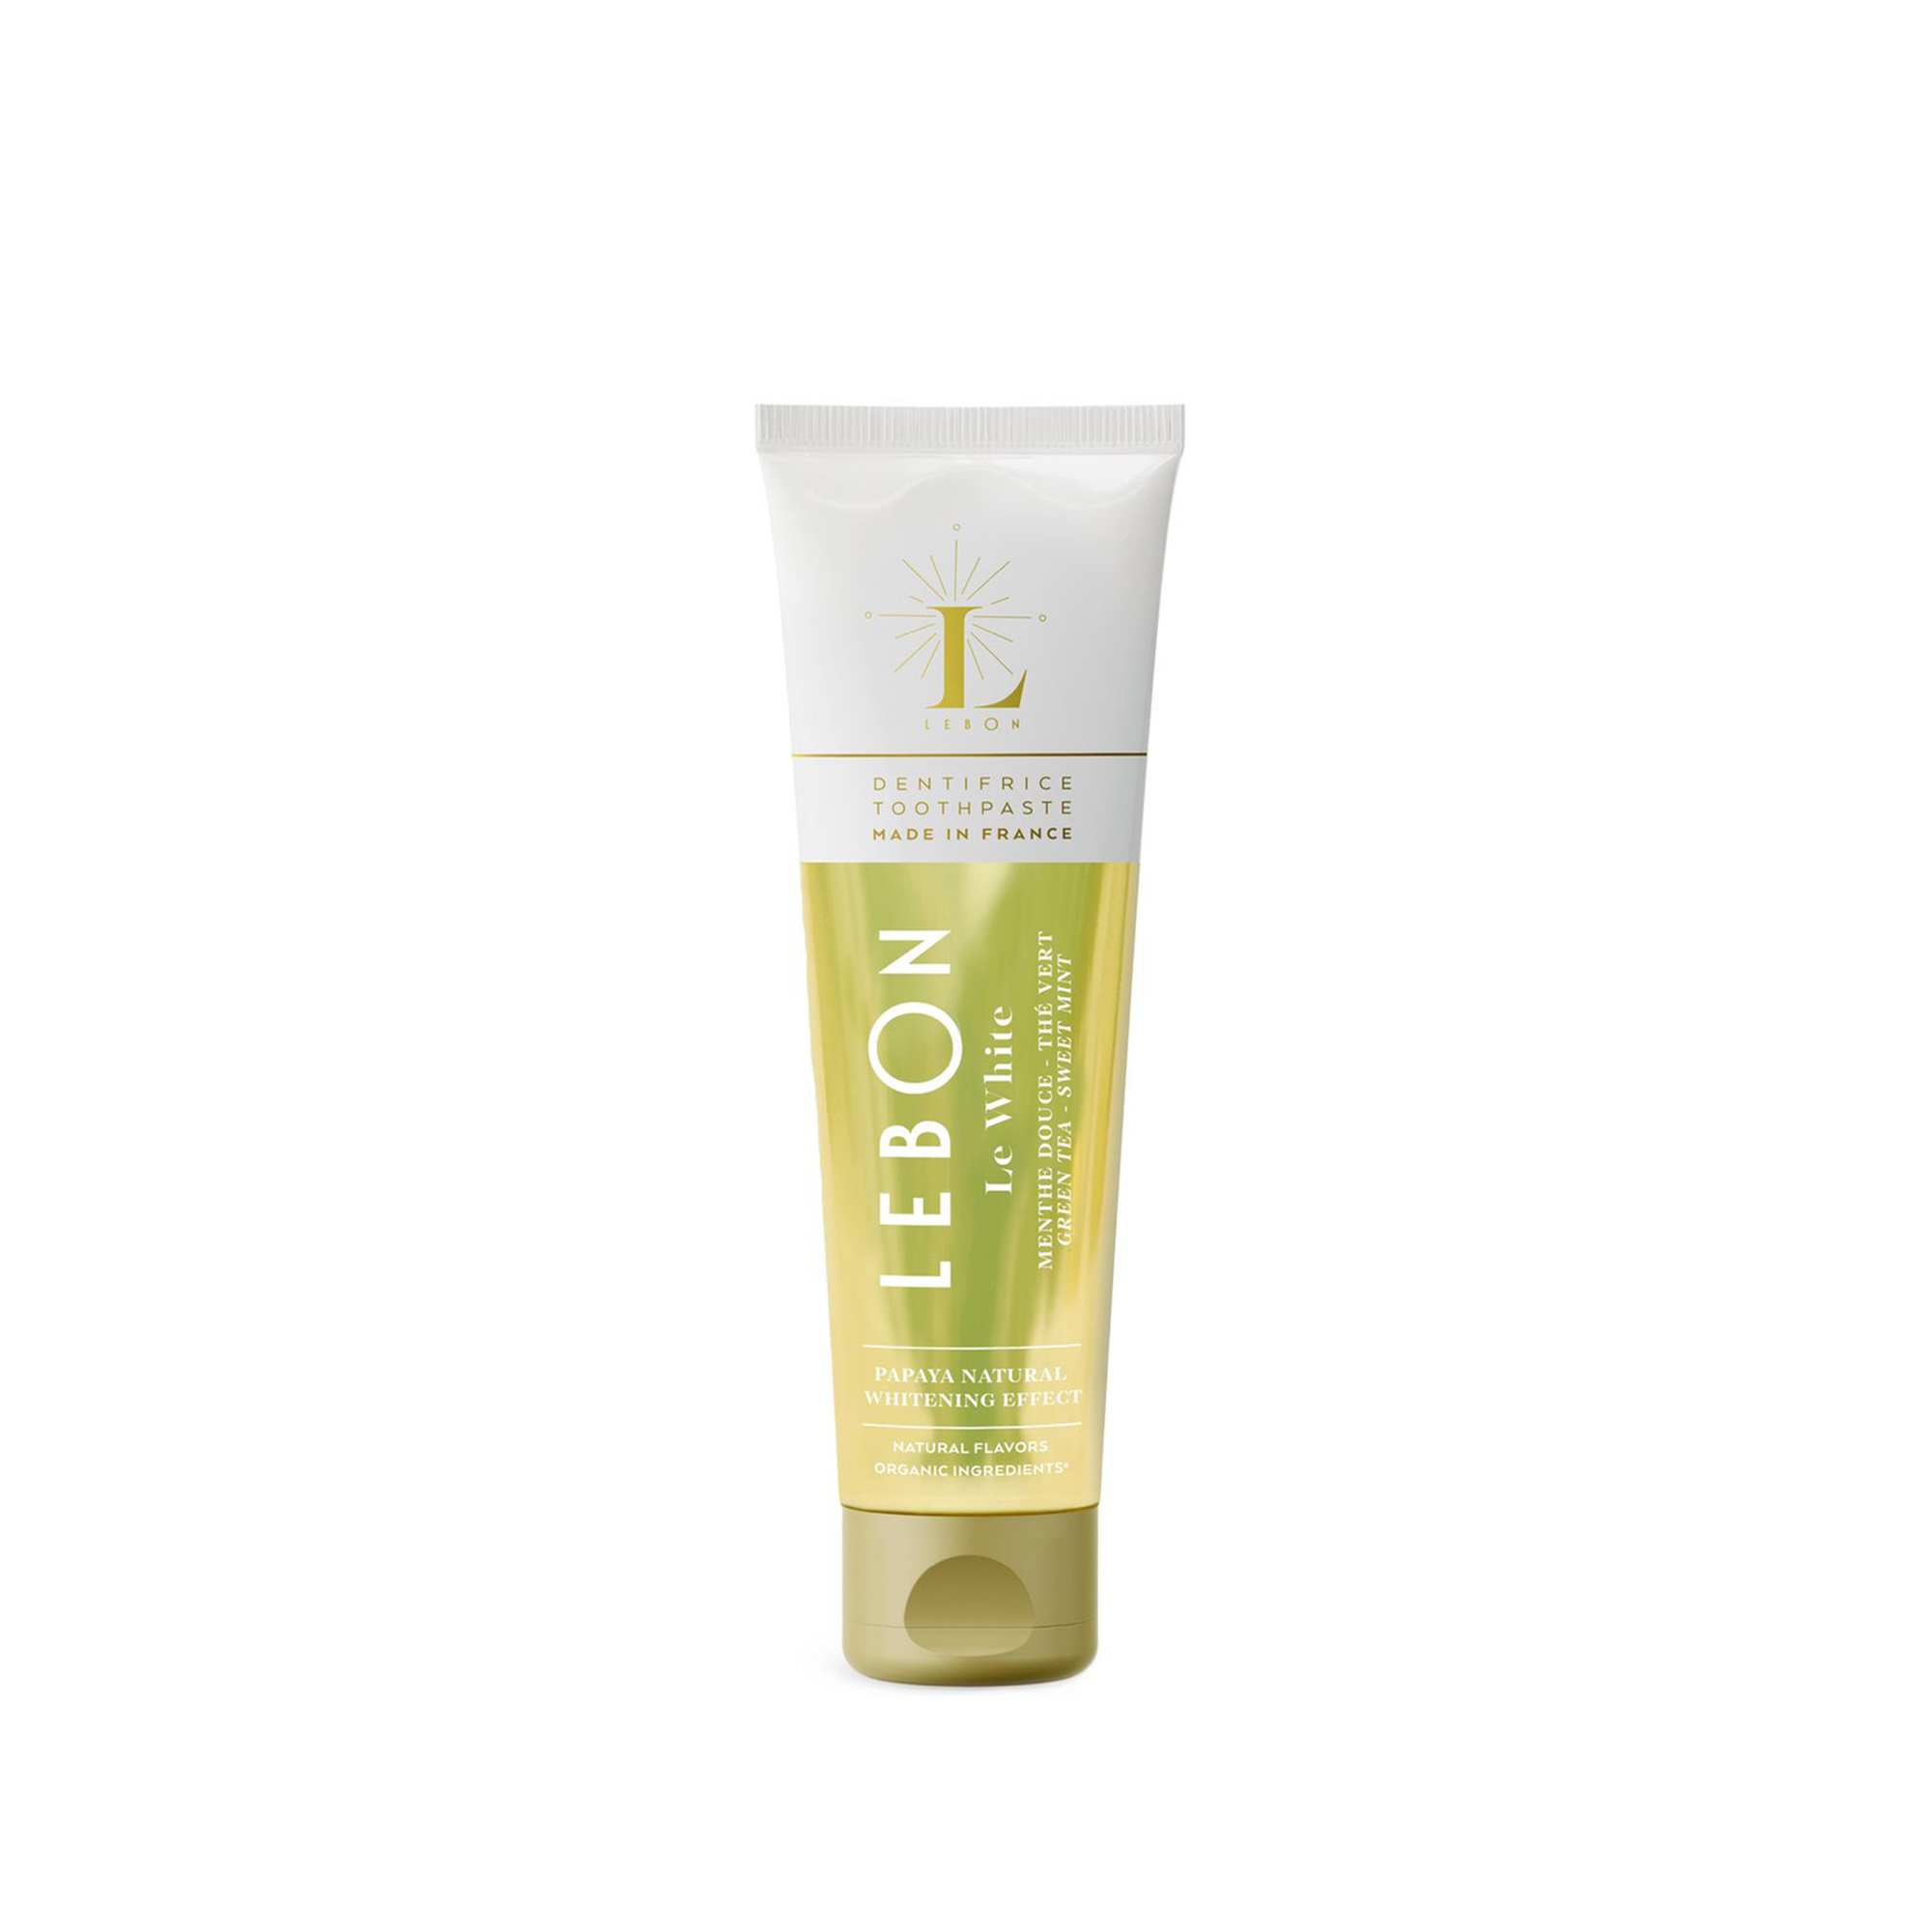 Lebon - Le White - Fogfehérítő Zöldteás Fogkrém - Mini